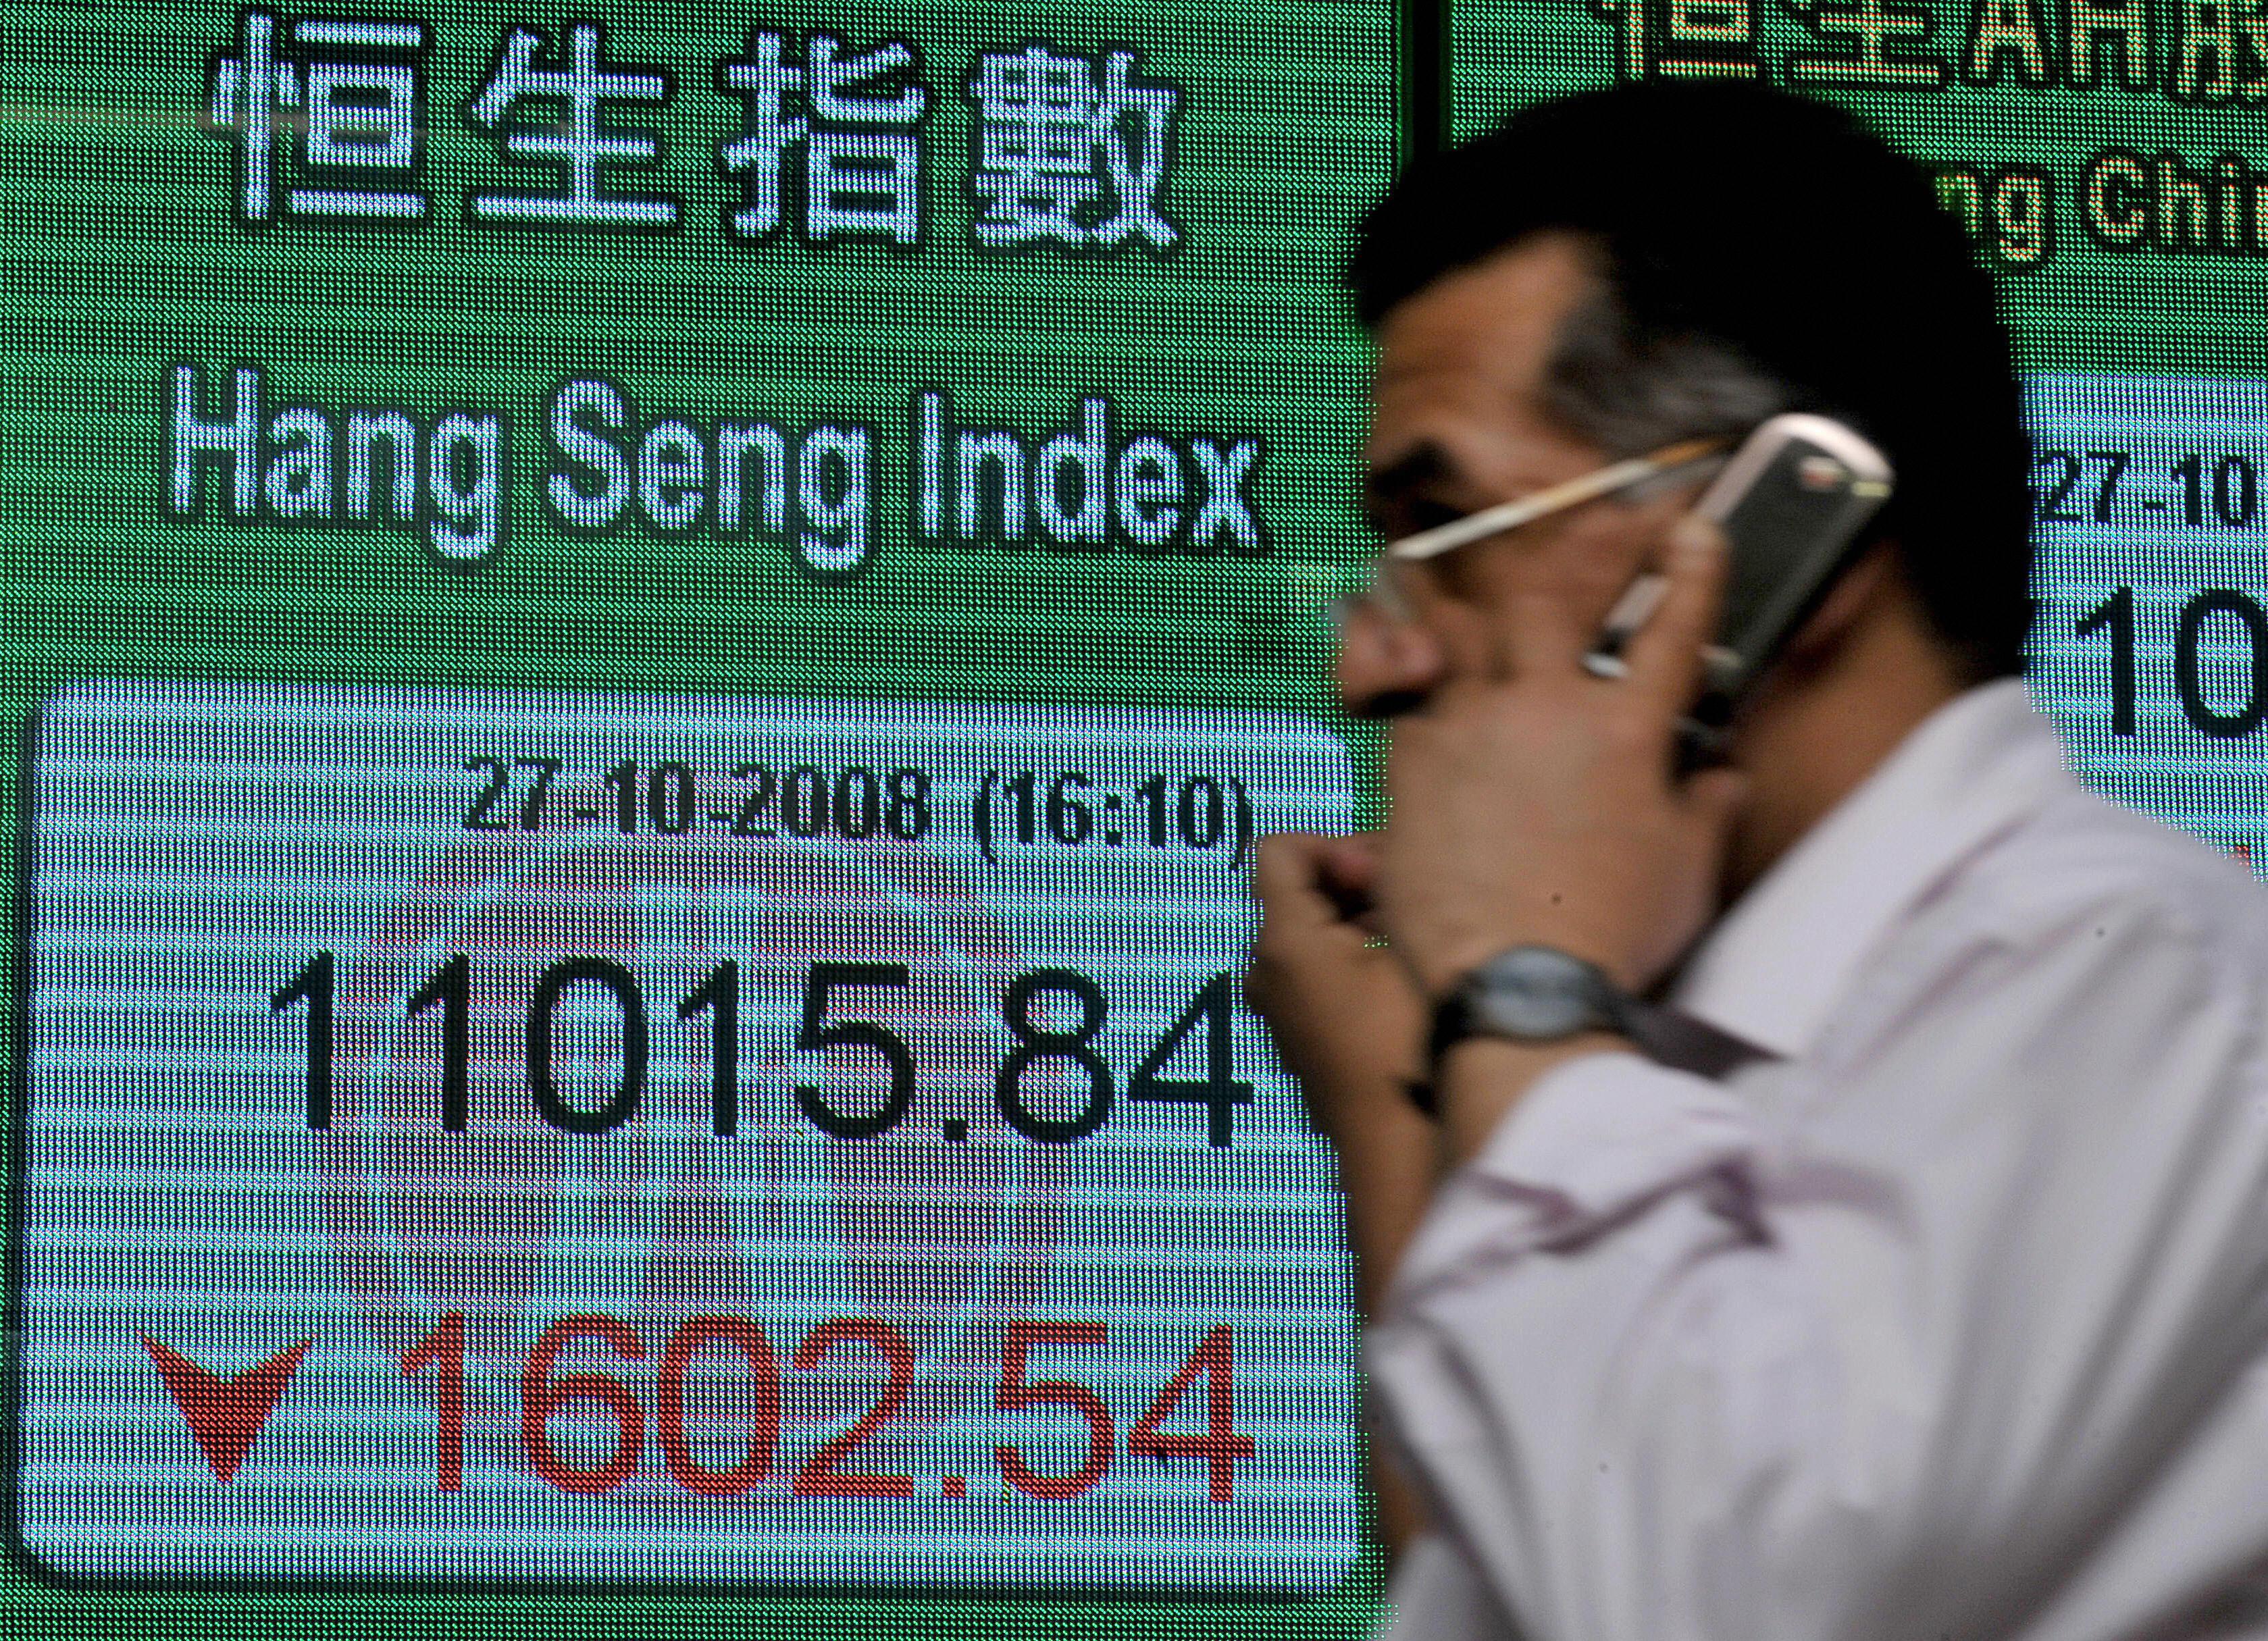 I Hongkong gick Hang Seng-indexet ned. Foto: Mike Clarke/AFP via Getty Images